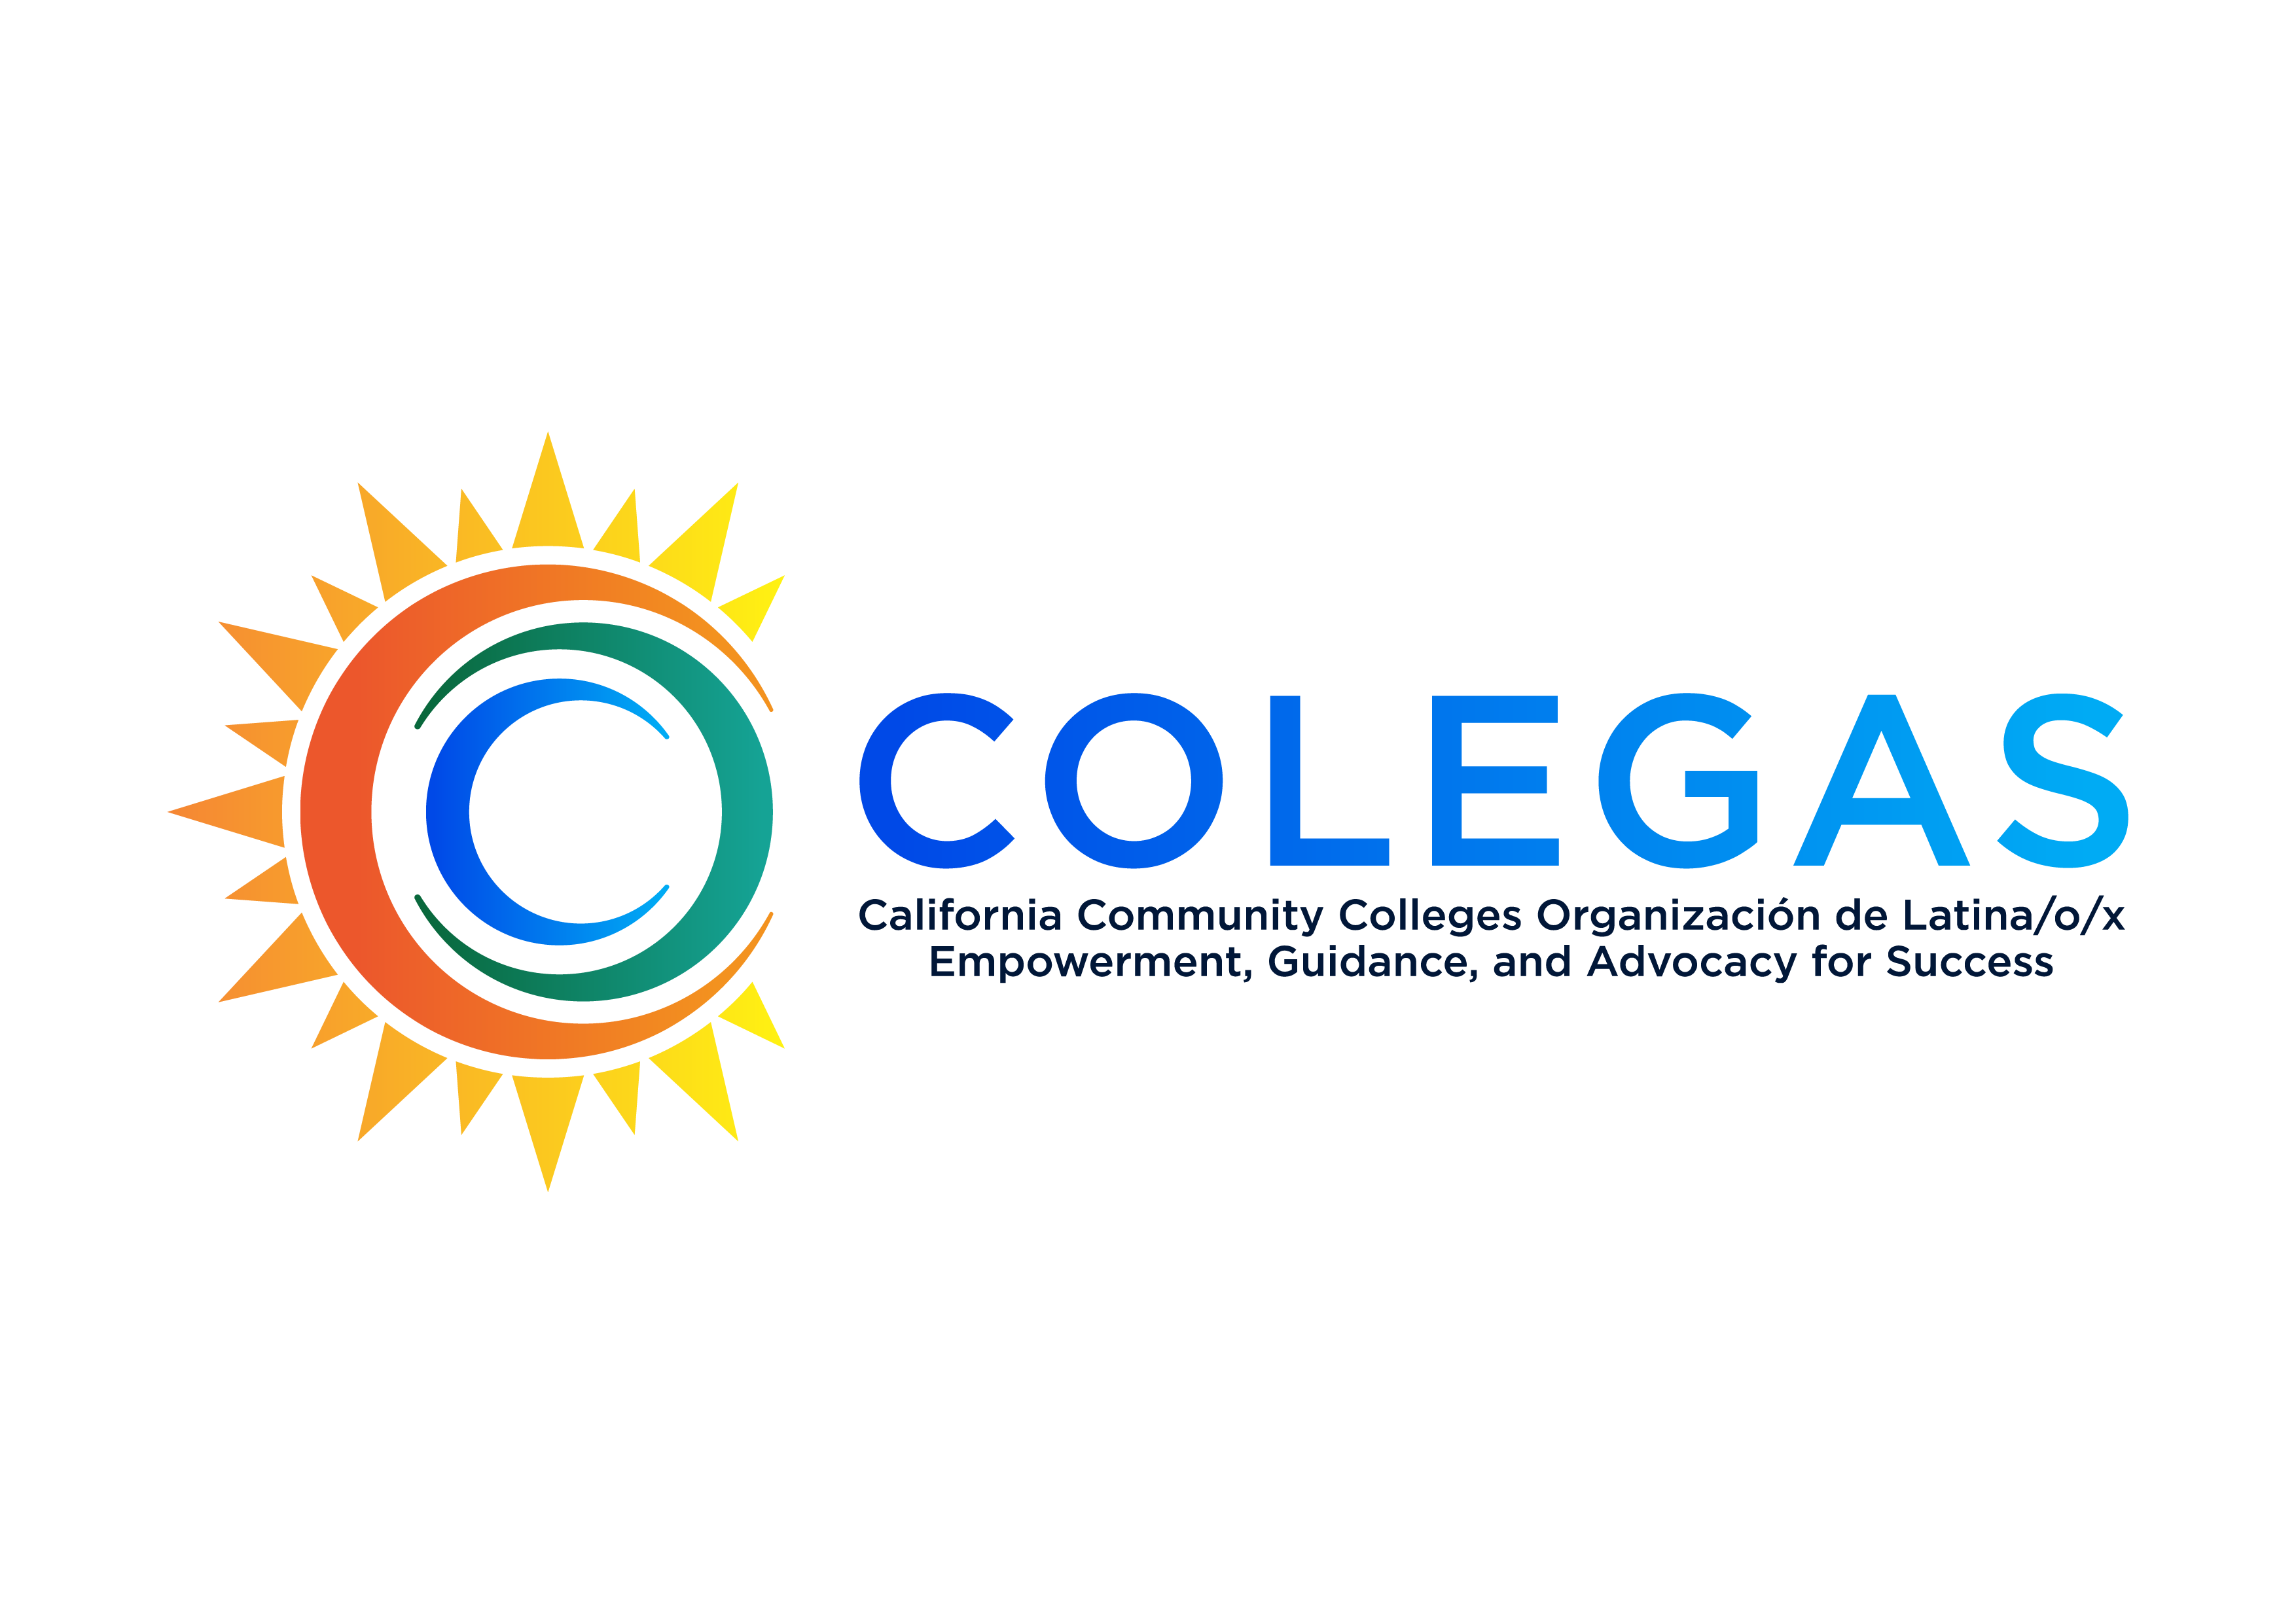 COLEGAS California Community Colleges Organizacion de Latina/o/x Empowerment, Guidance, and Advocacy for Success